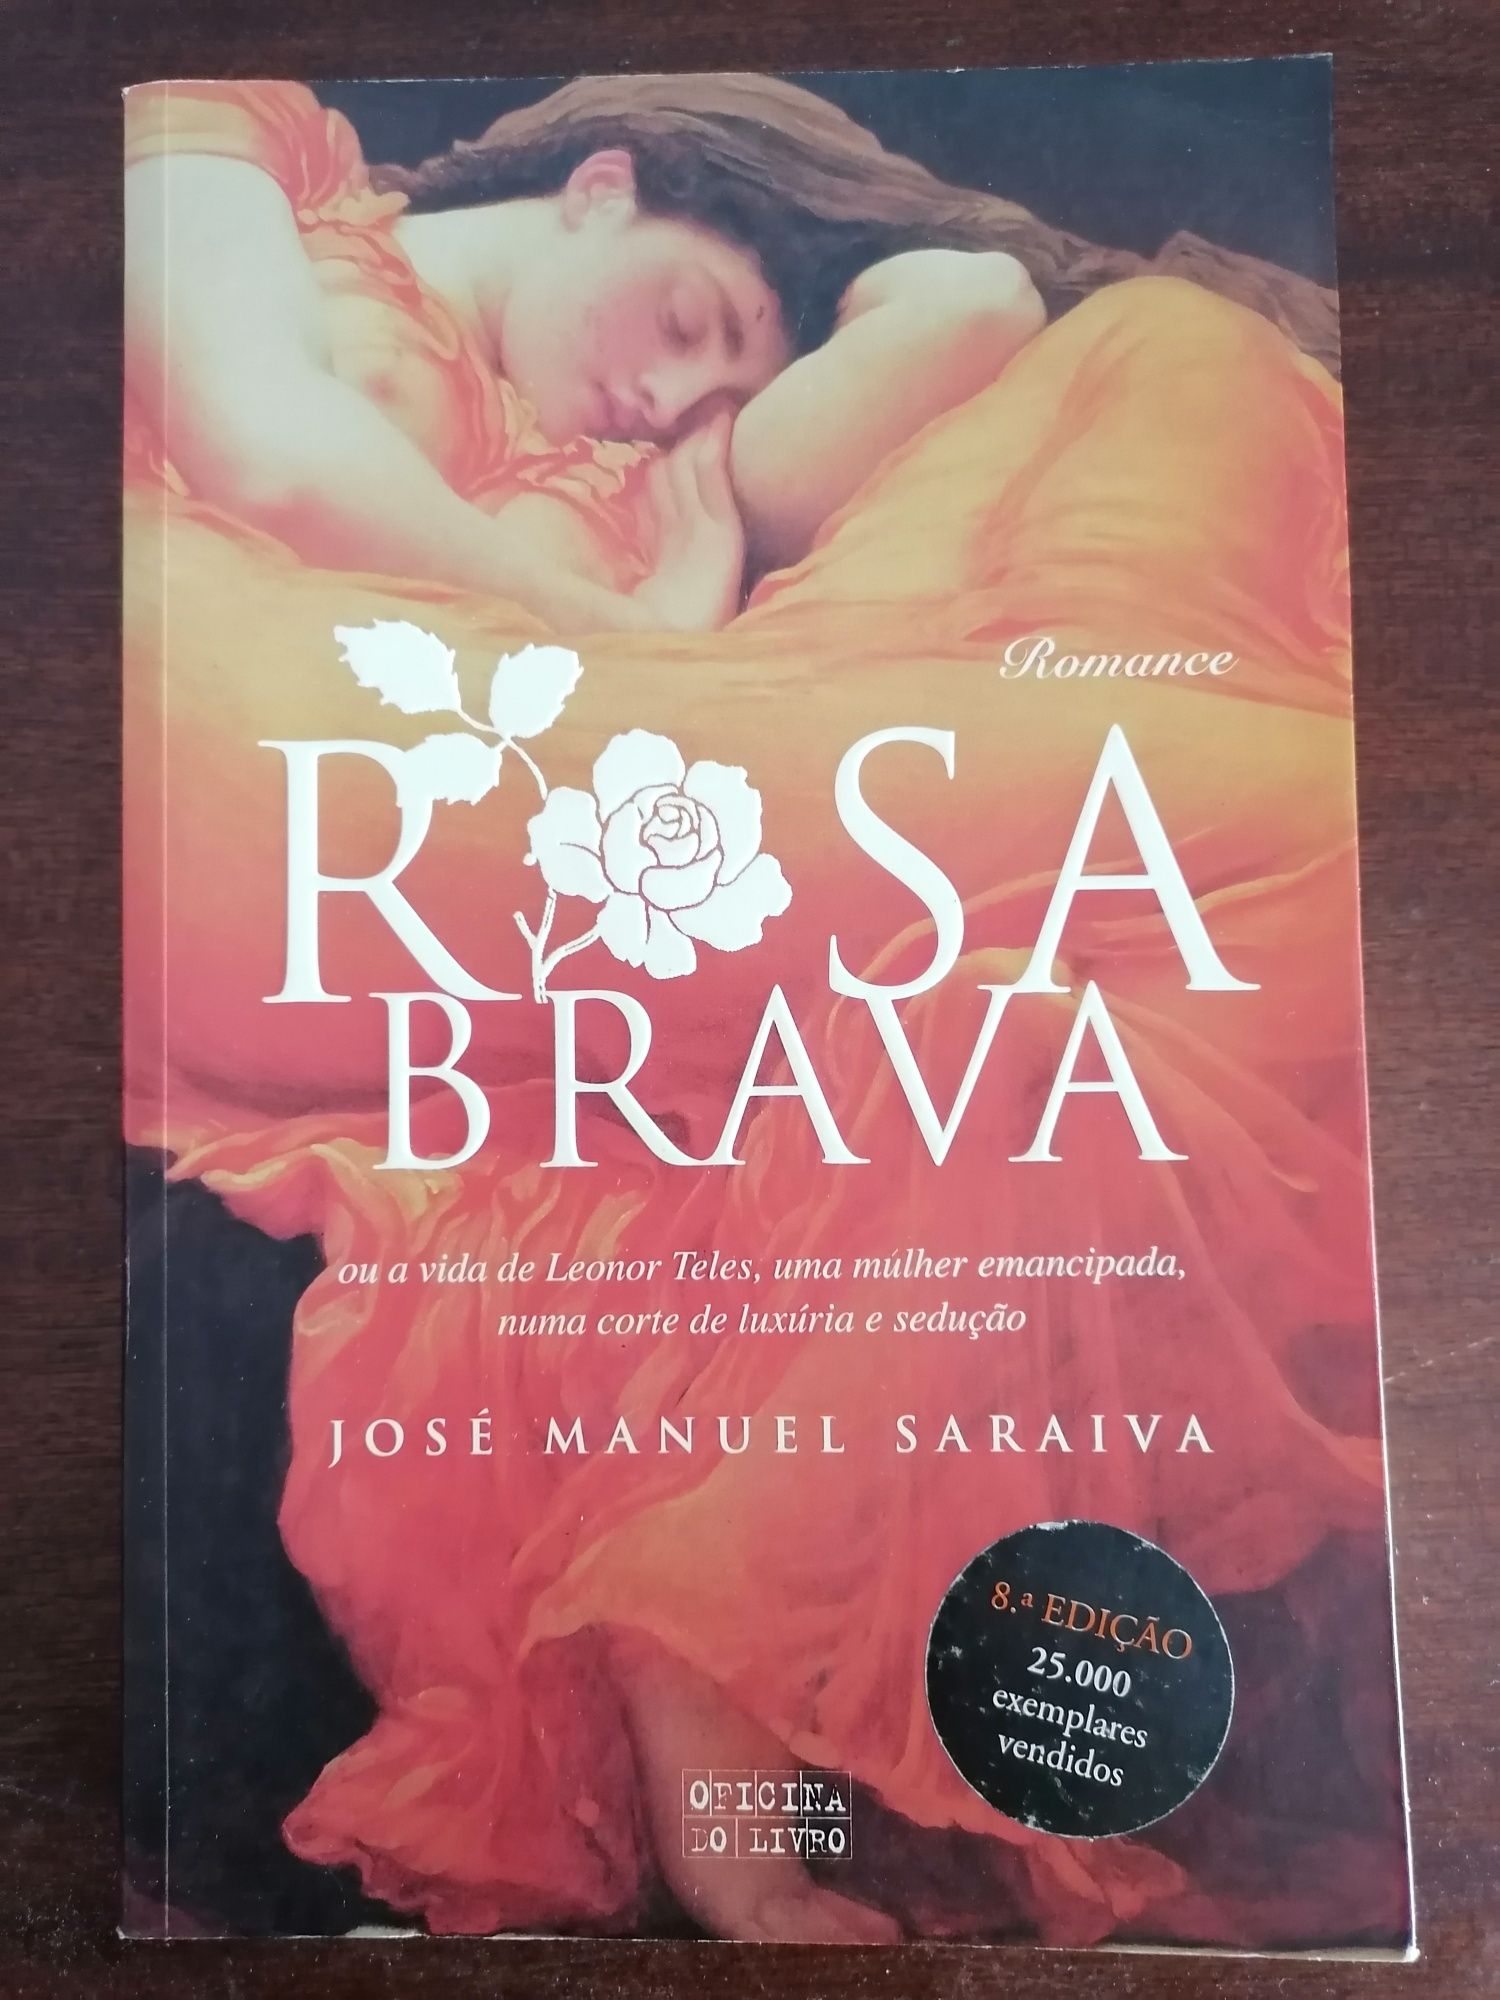 Vendo livro "Rosa Brava", de José Manuel Saraiva